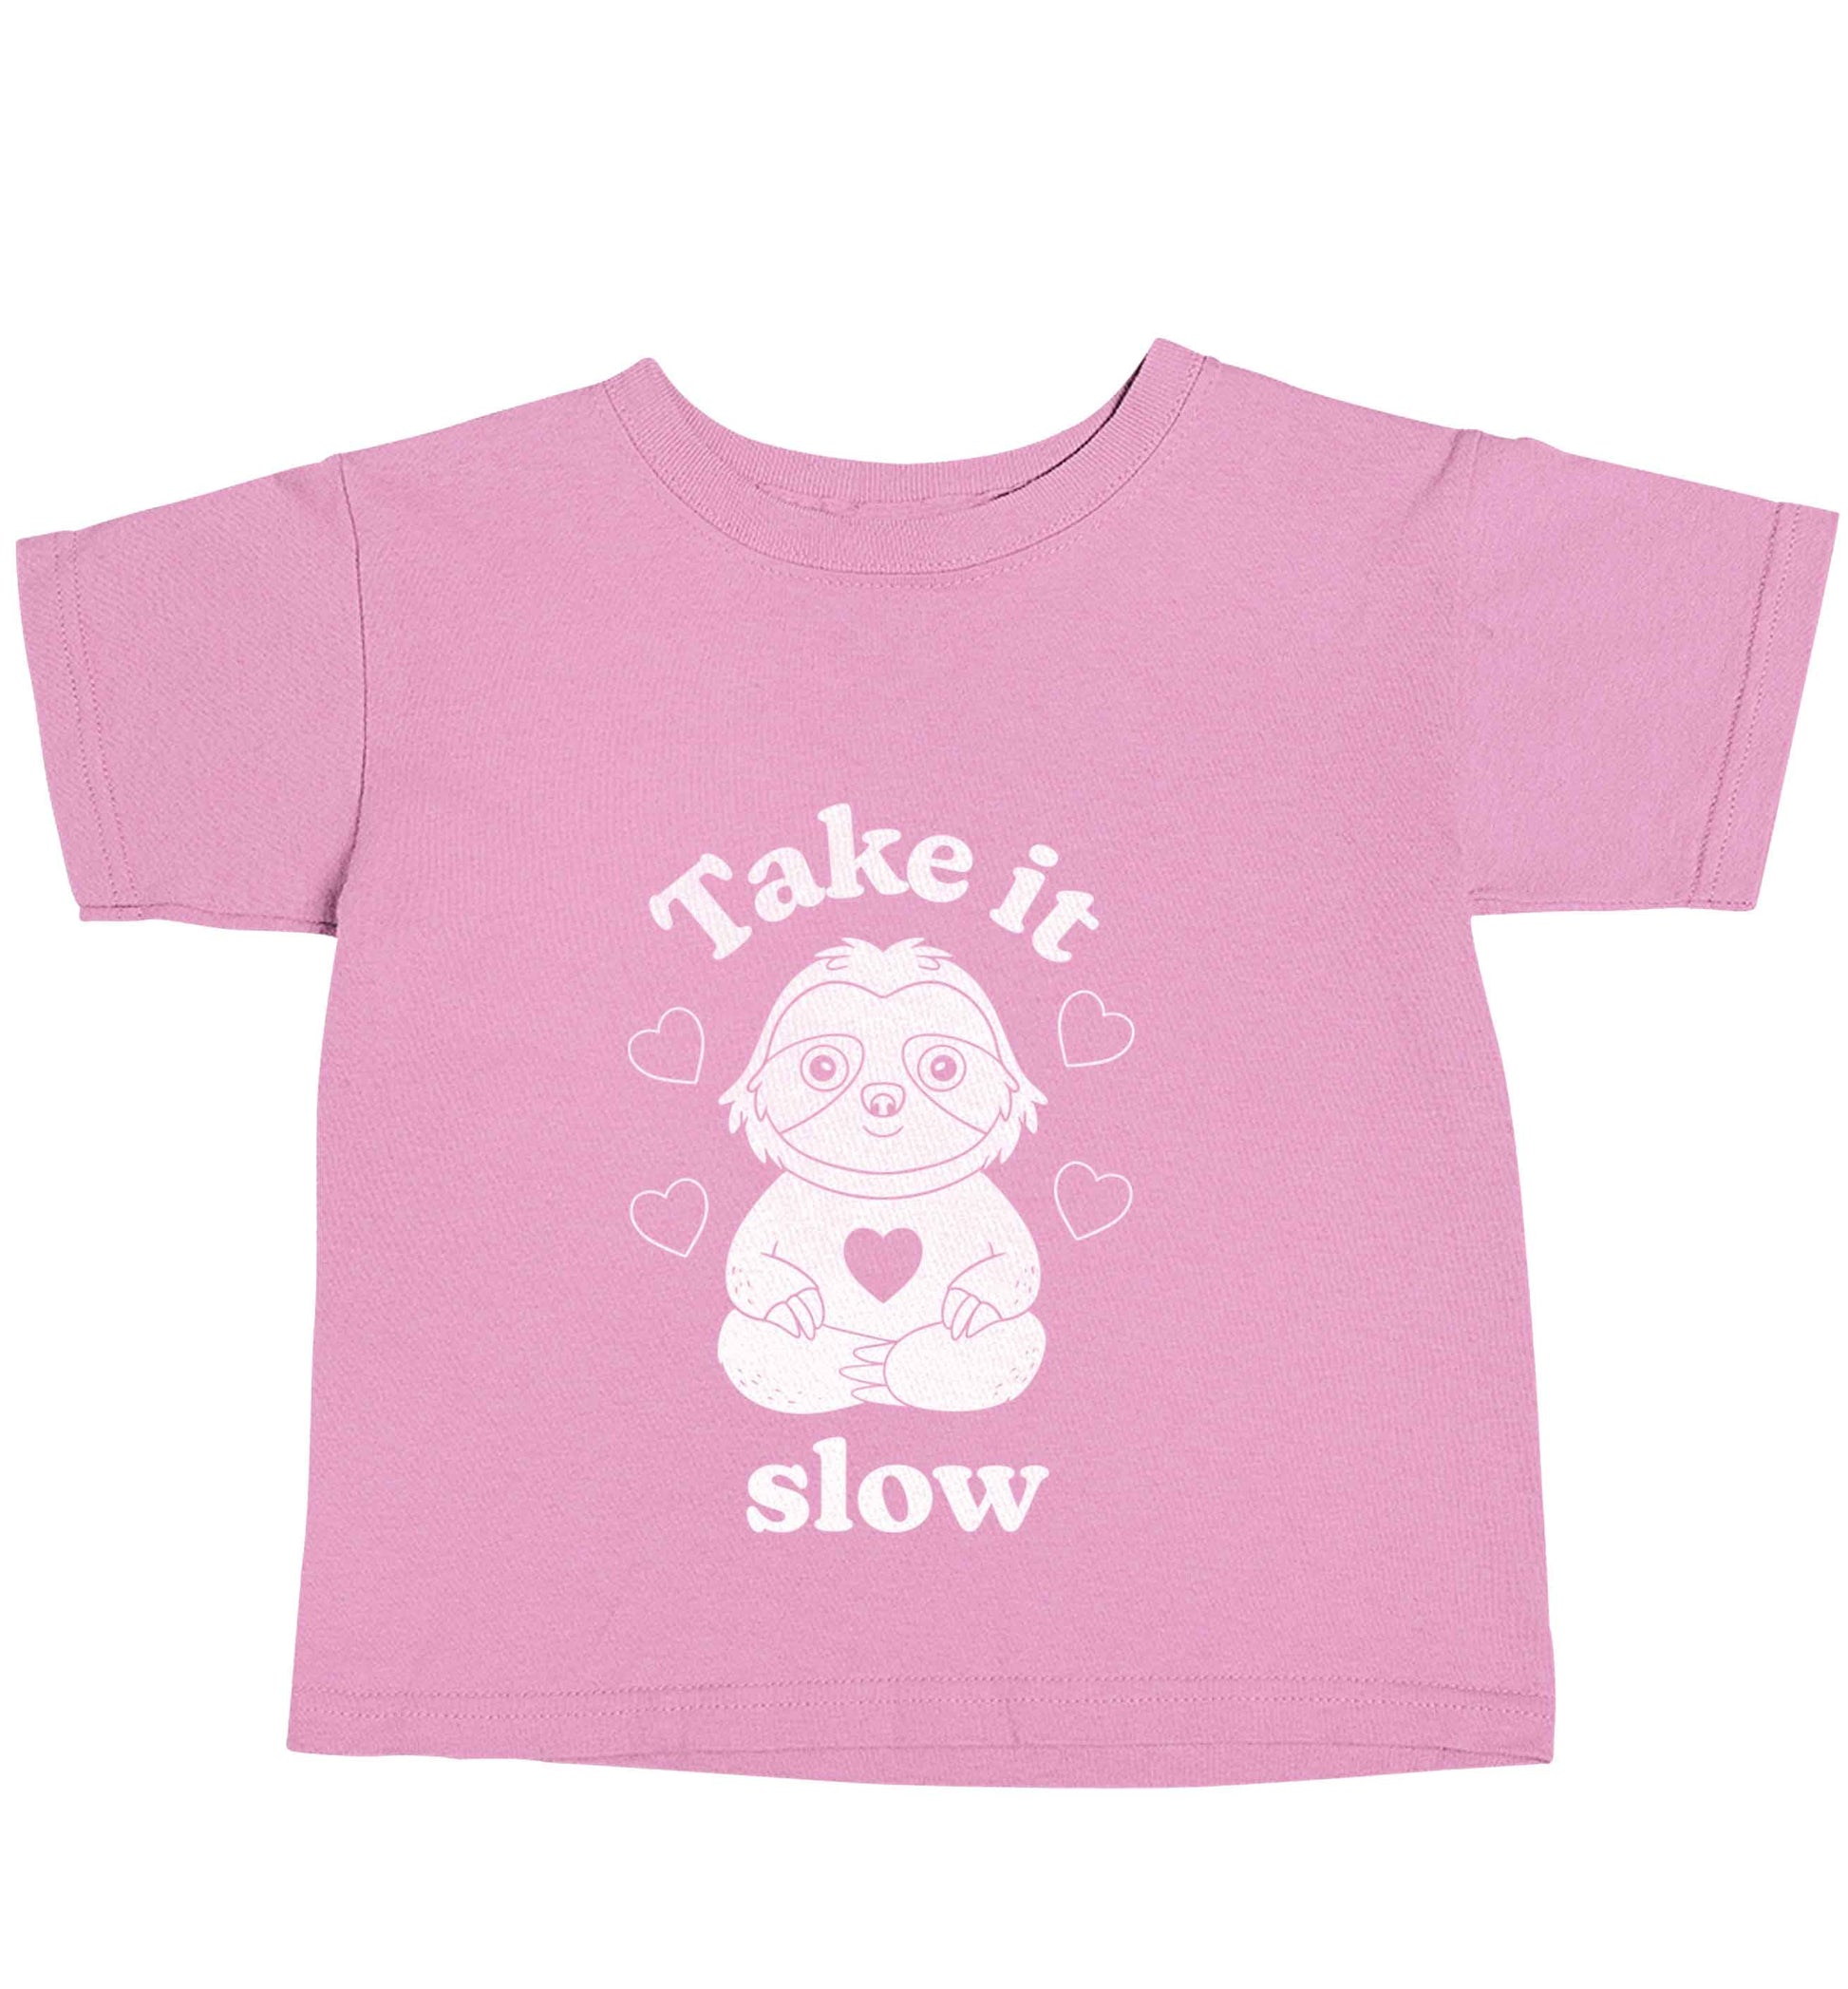 Take it slow light pink baby toddler Tshirt 2 Years